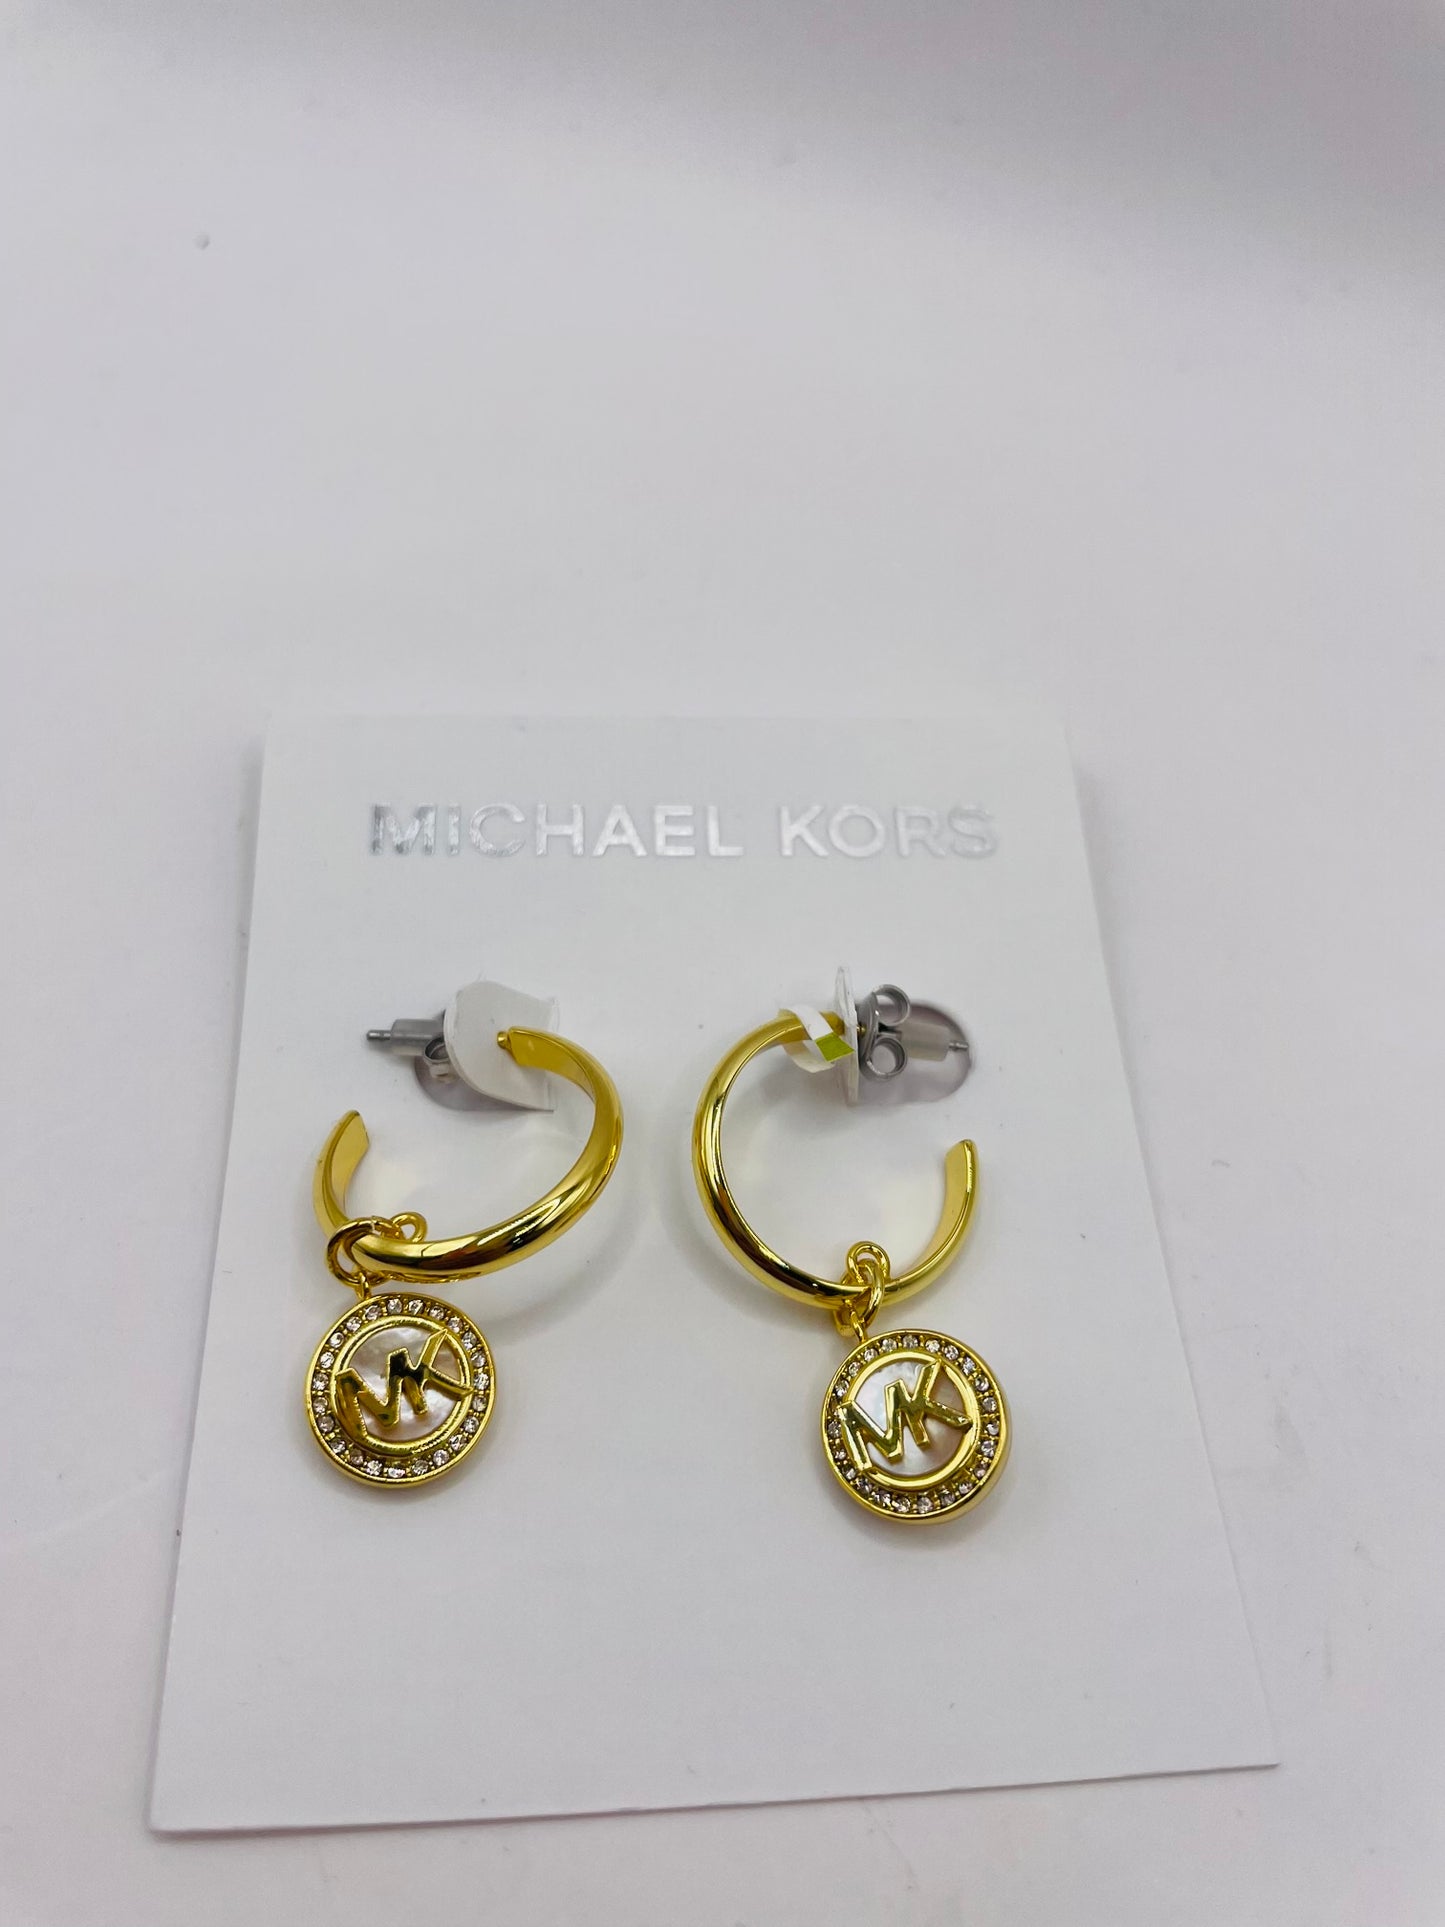 Michael kors earring